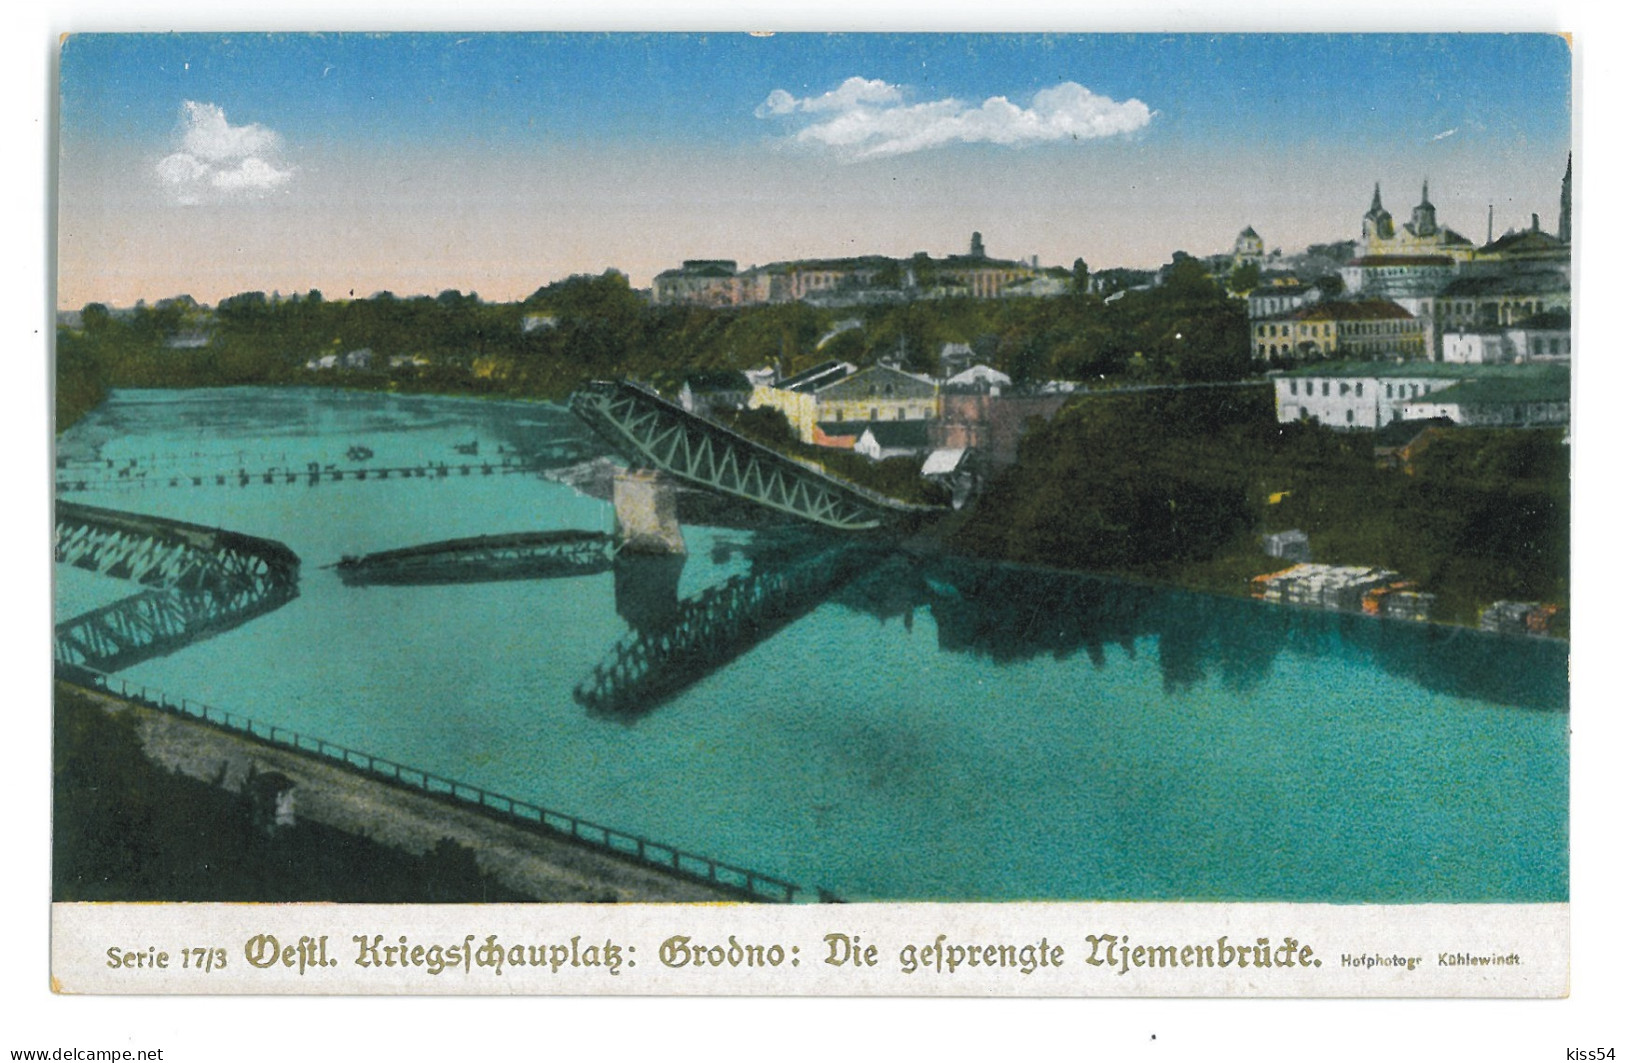 BL 43 - 21477 GRODNO, Bridge Destroyed, Belarus - Old Postcard - Unused - Weißrussland